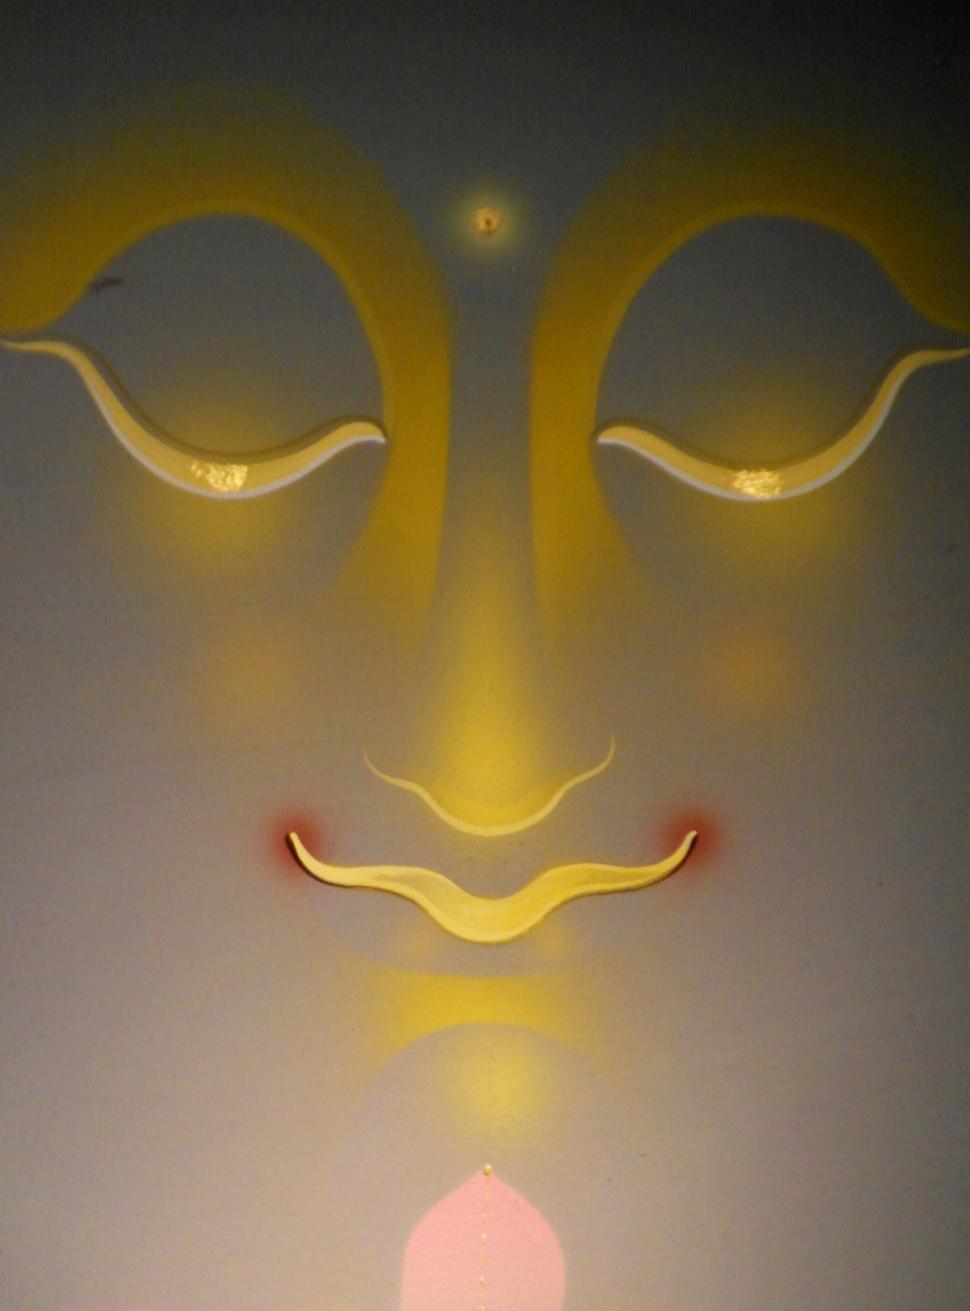 Free Image of Buddha Face 